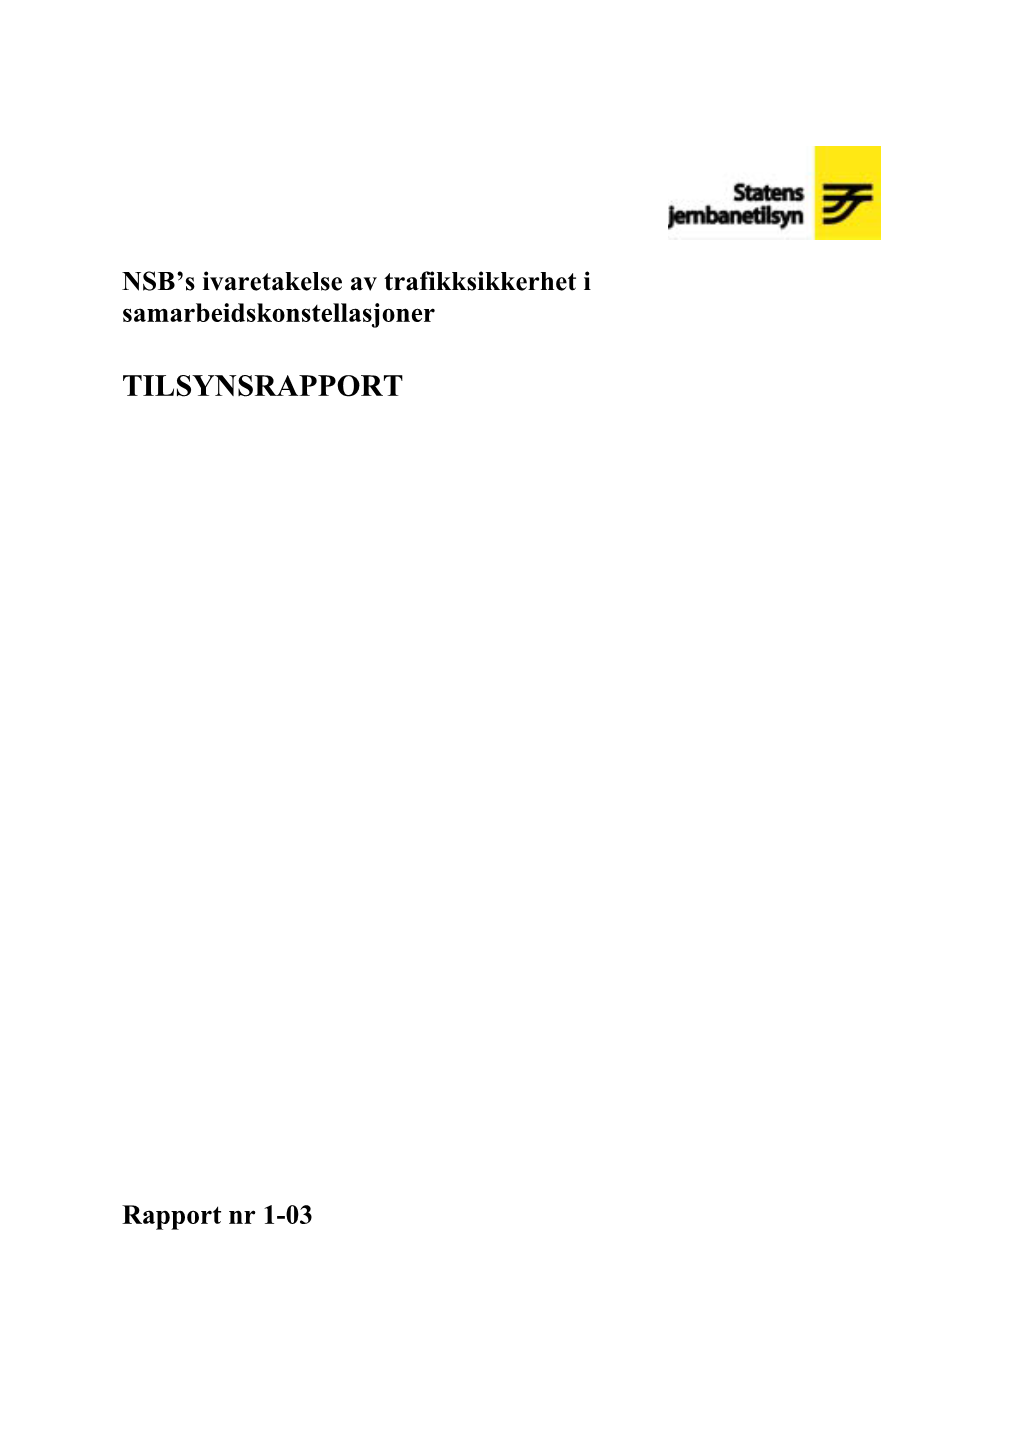 Tilsynsrapport 1-03